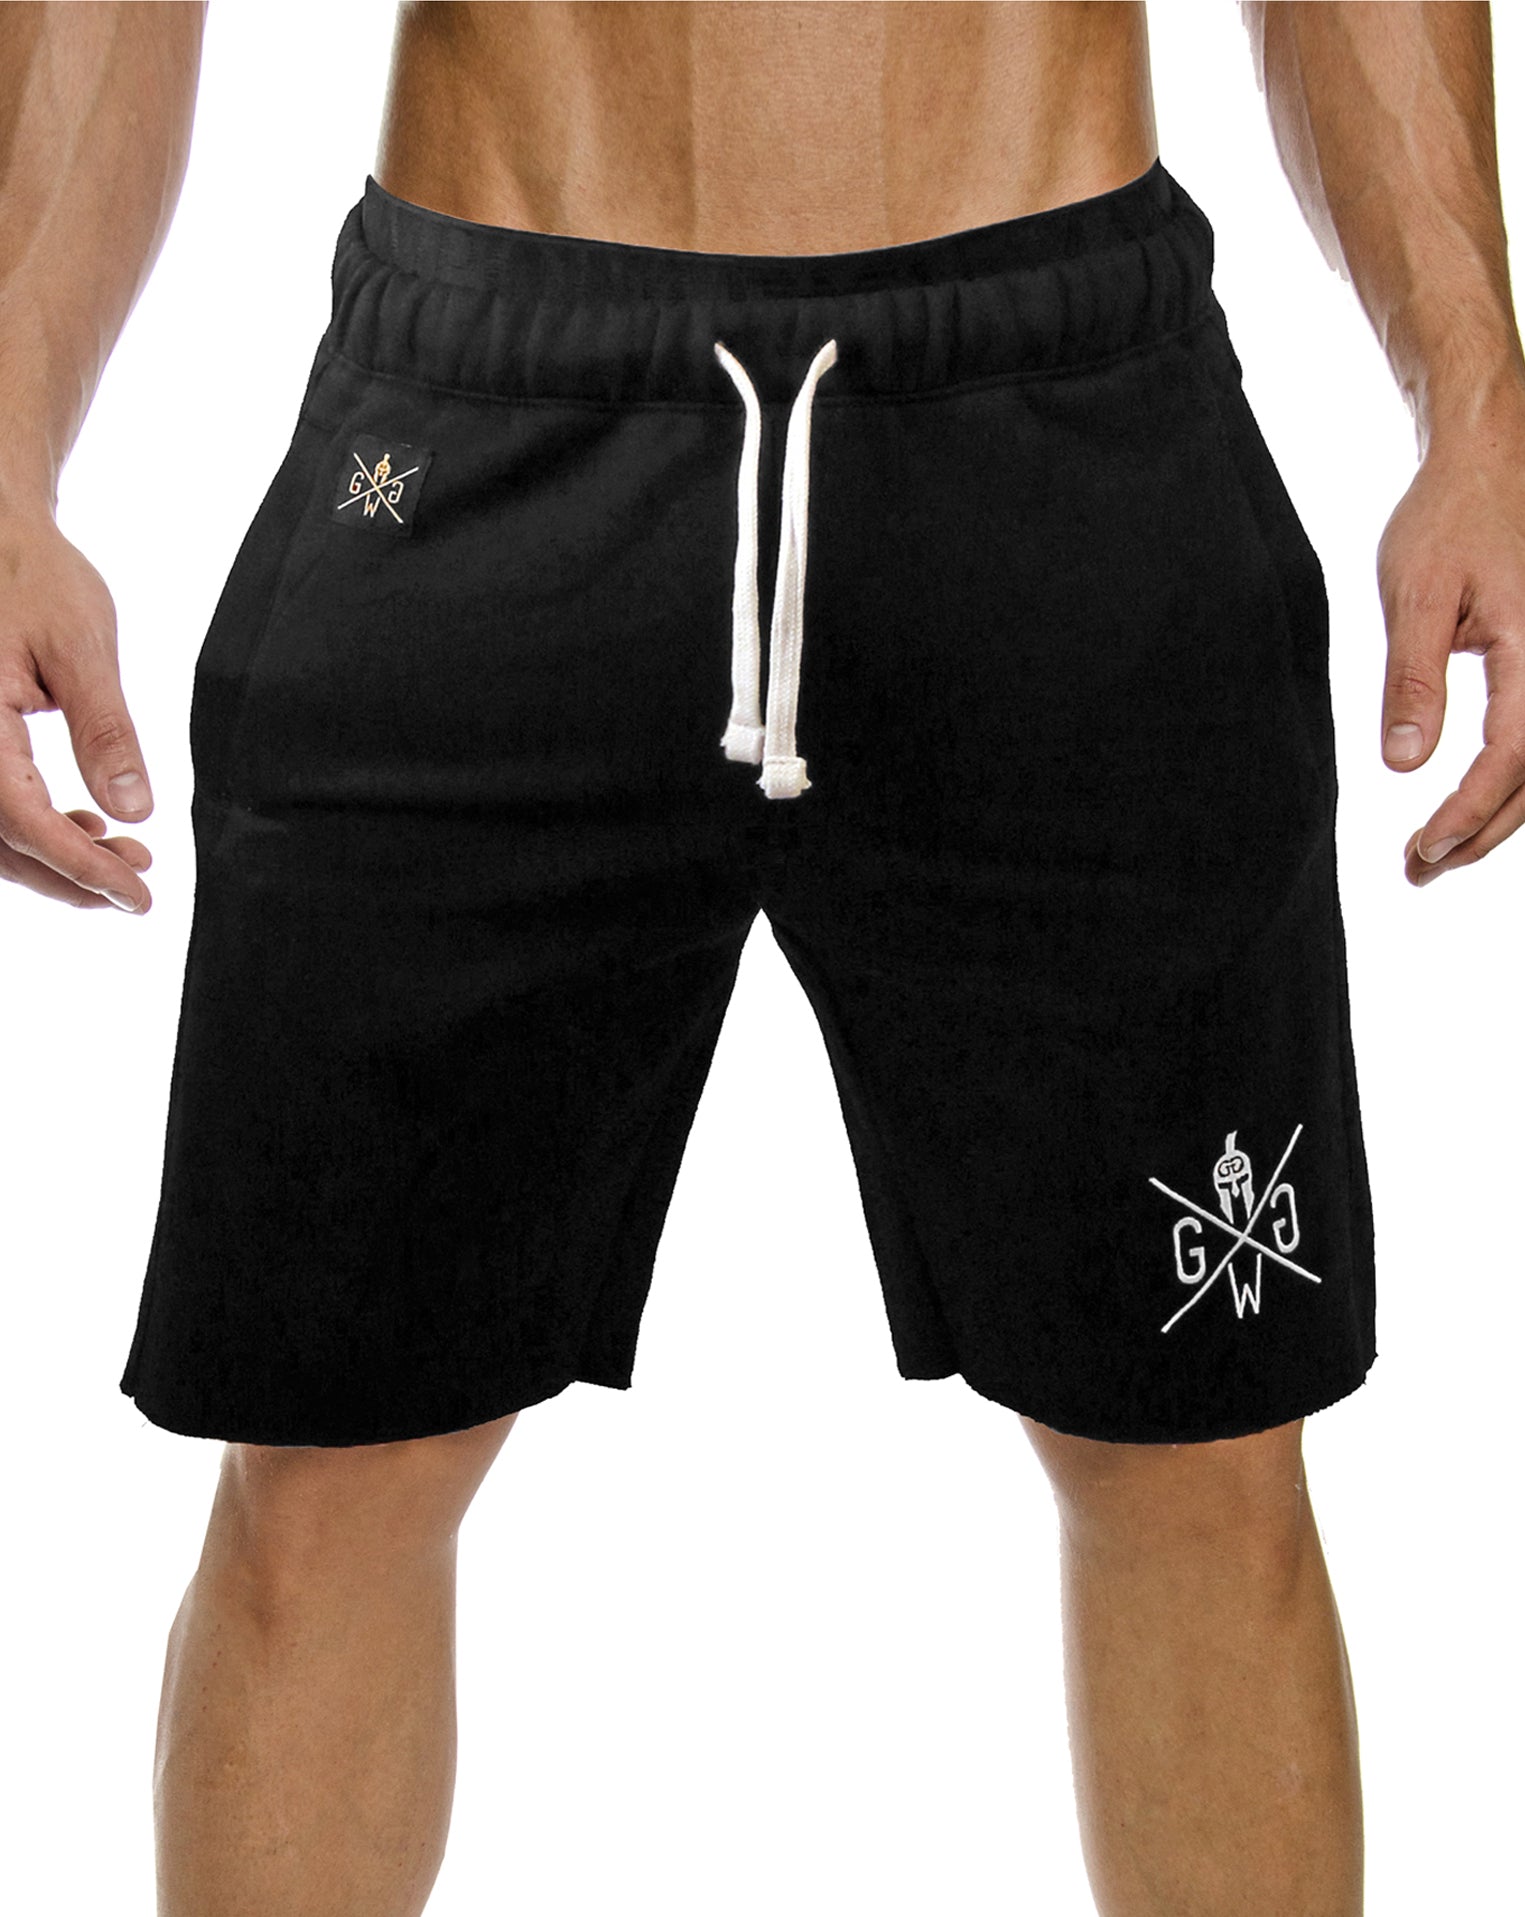 Herren Sporthosen in Schwarz für Sportler und modebewusste Männer, aus hochwertigem Material für maximale Bewegungsfreiheit, von Gym Generation.